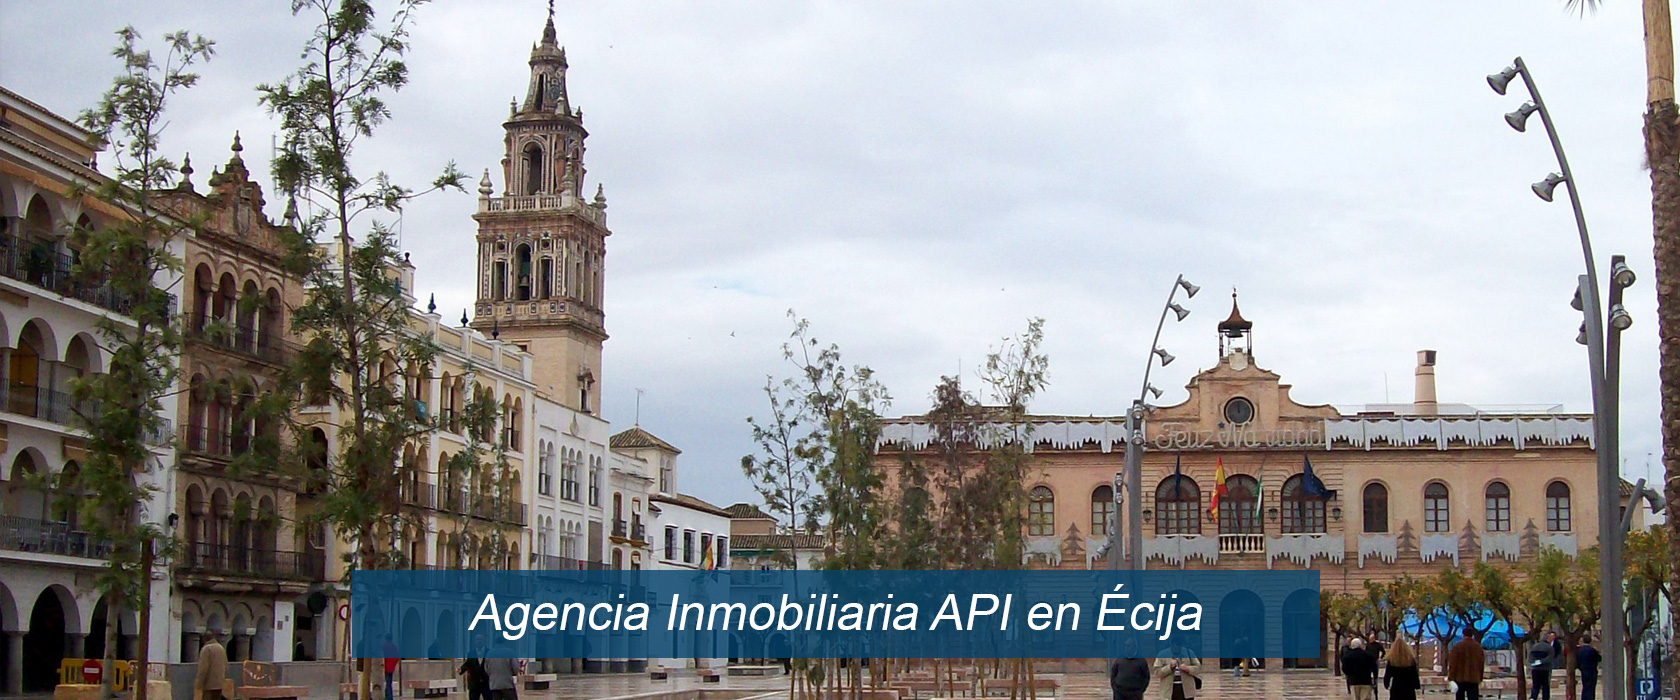 Apiml Inmobiliaria en Ecija ,casas y pisos en venta, solares, Sevilla, Écija.